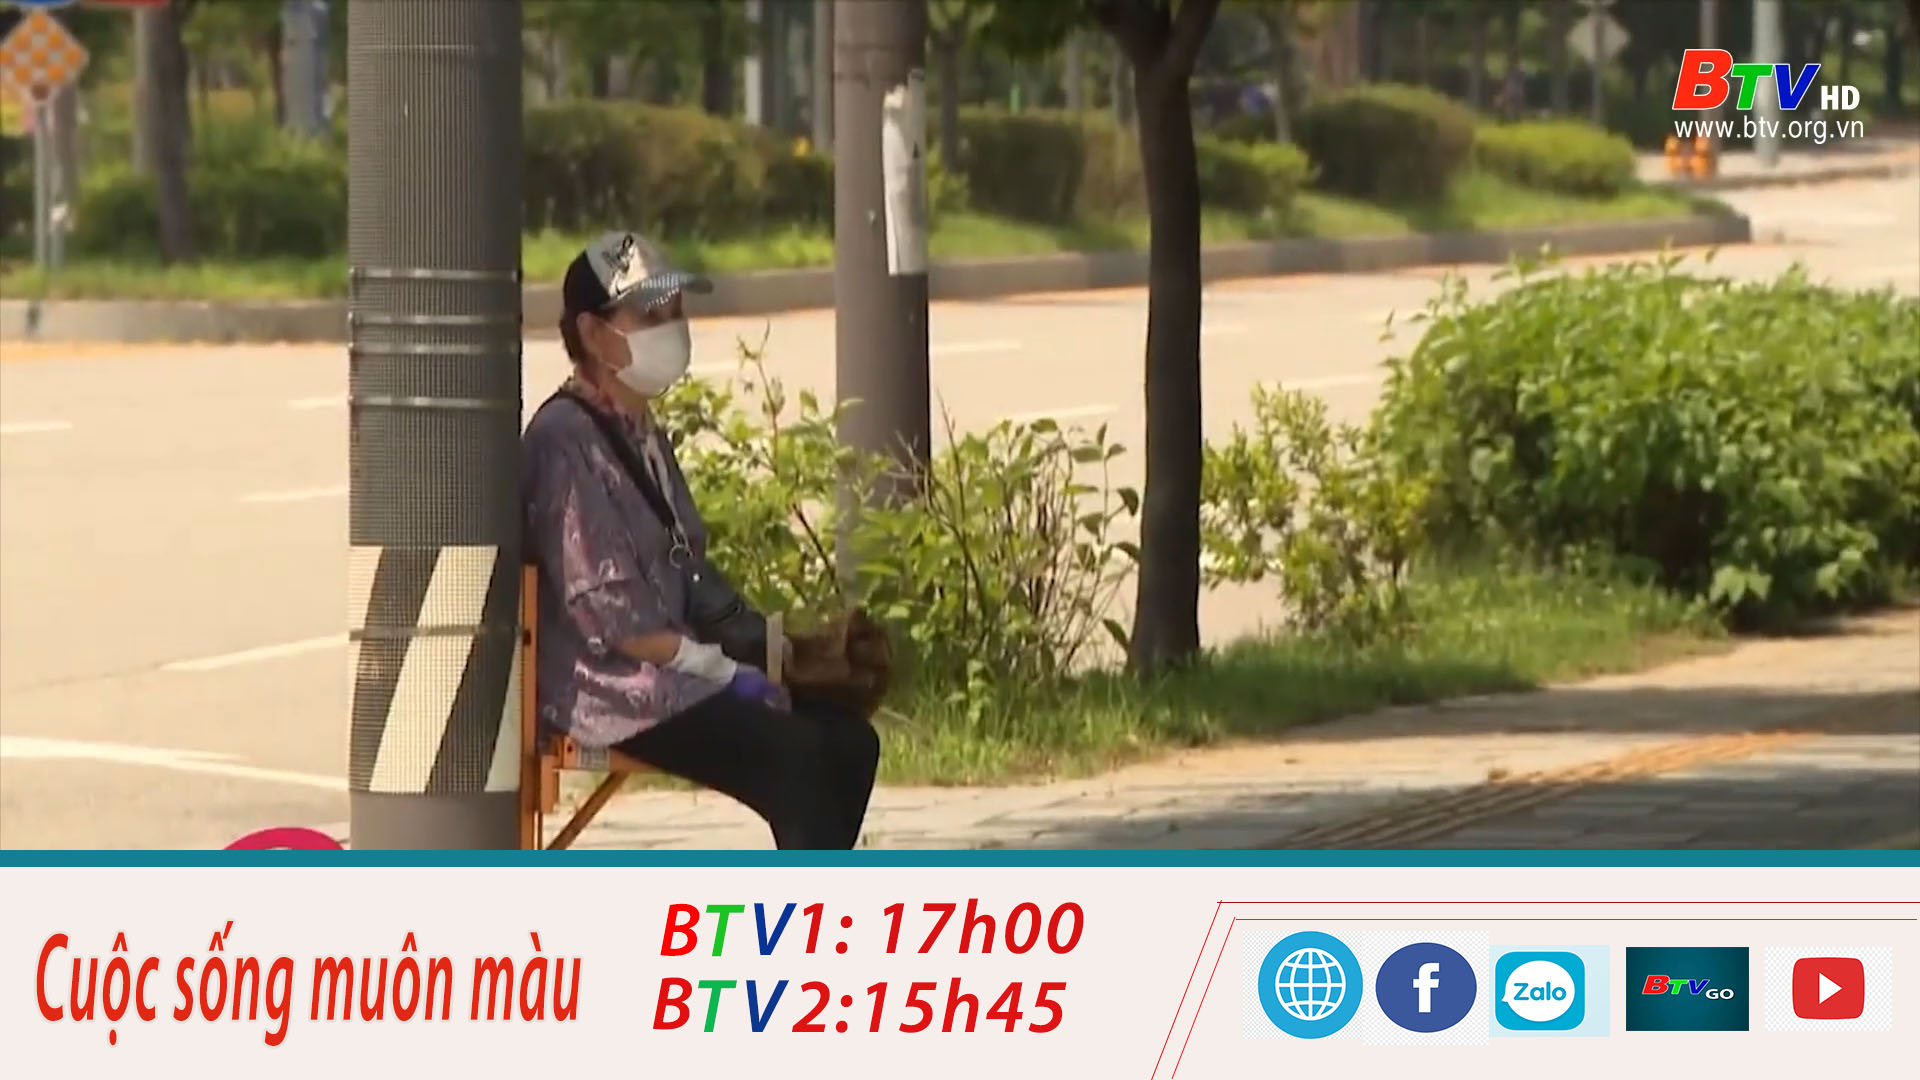 	Hàn Quốc – Ghế an toàn cho người cao tuổi đứng chờ đèn giao thông